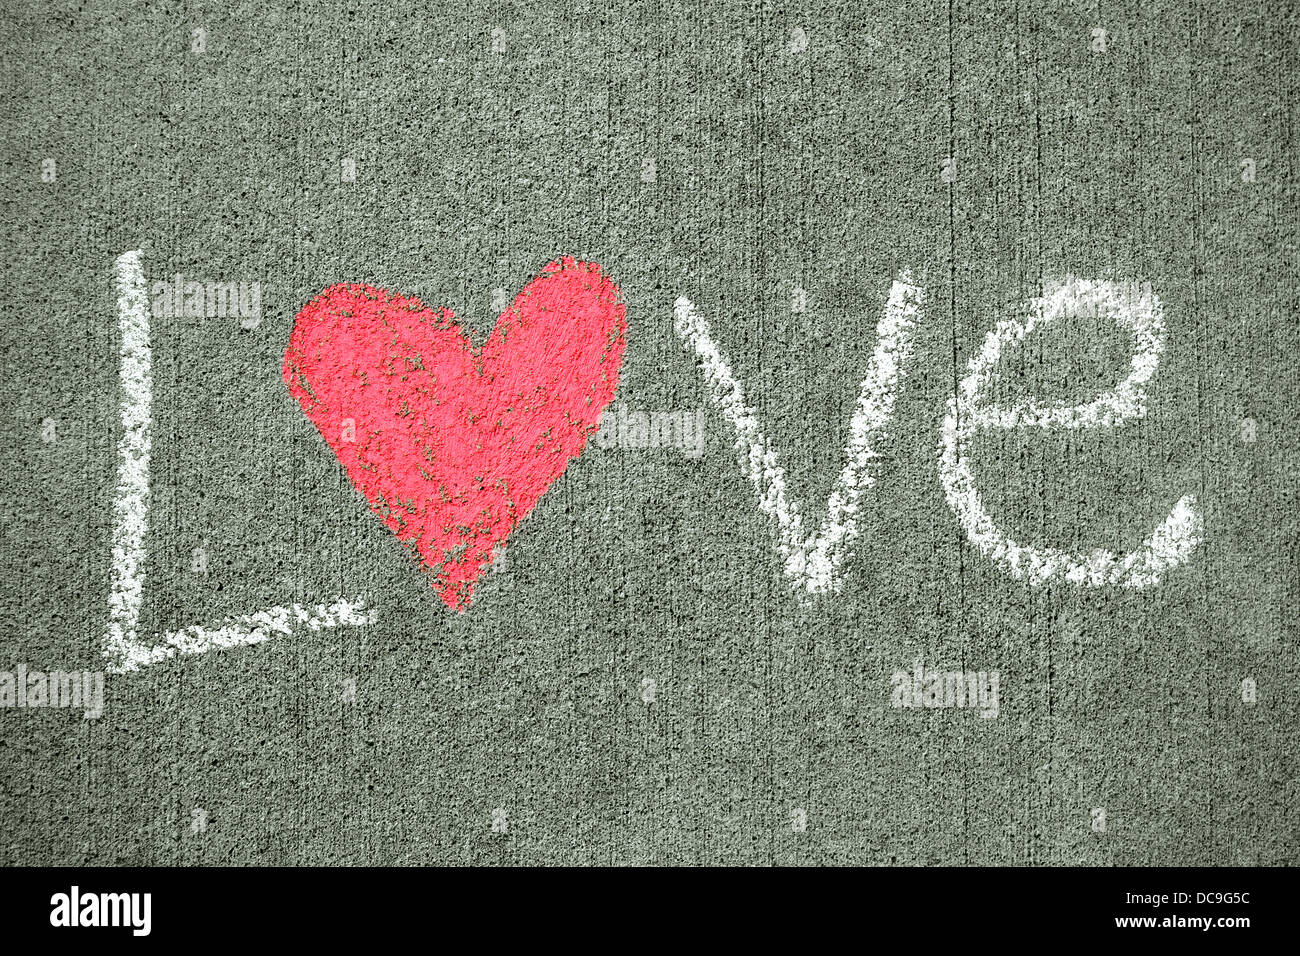 La parola amore è scritta in bianco gesso su un marciapiede e ha un cuore rosa per la lettera o. Foto Stock